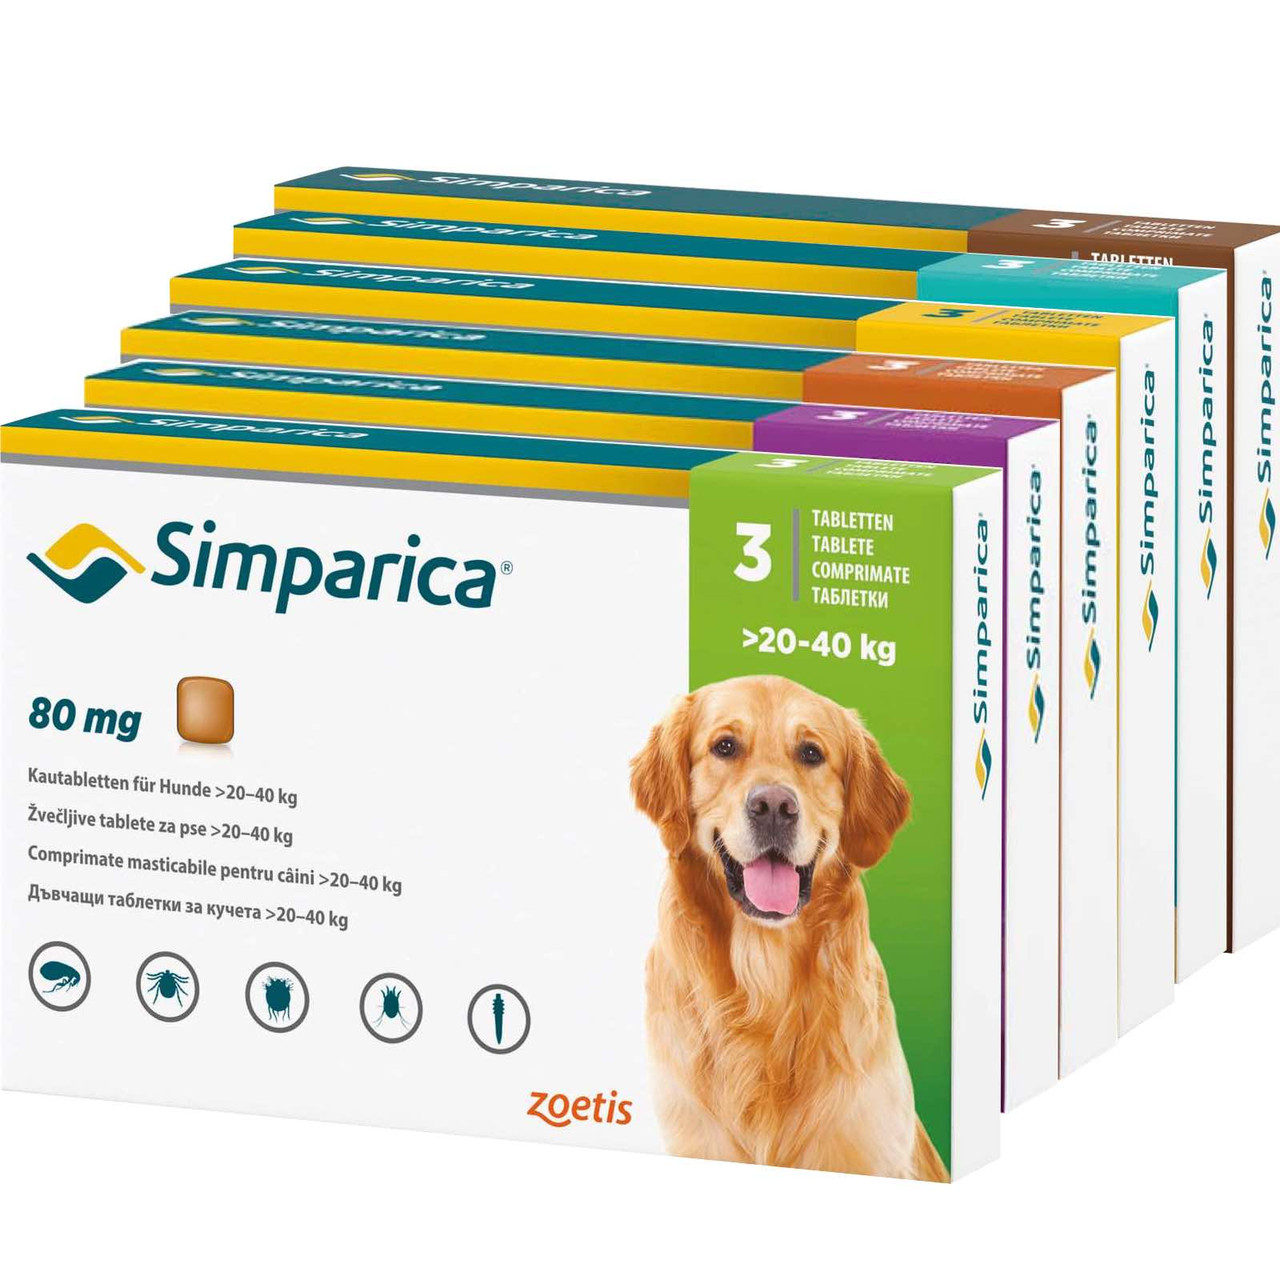 20% rabatt på Simparica Tuggtabletter mot loppor och fästingar för hundar hos Atlantic Pet Products